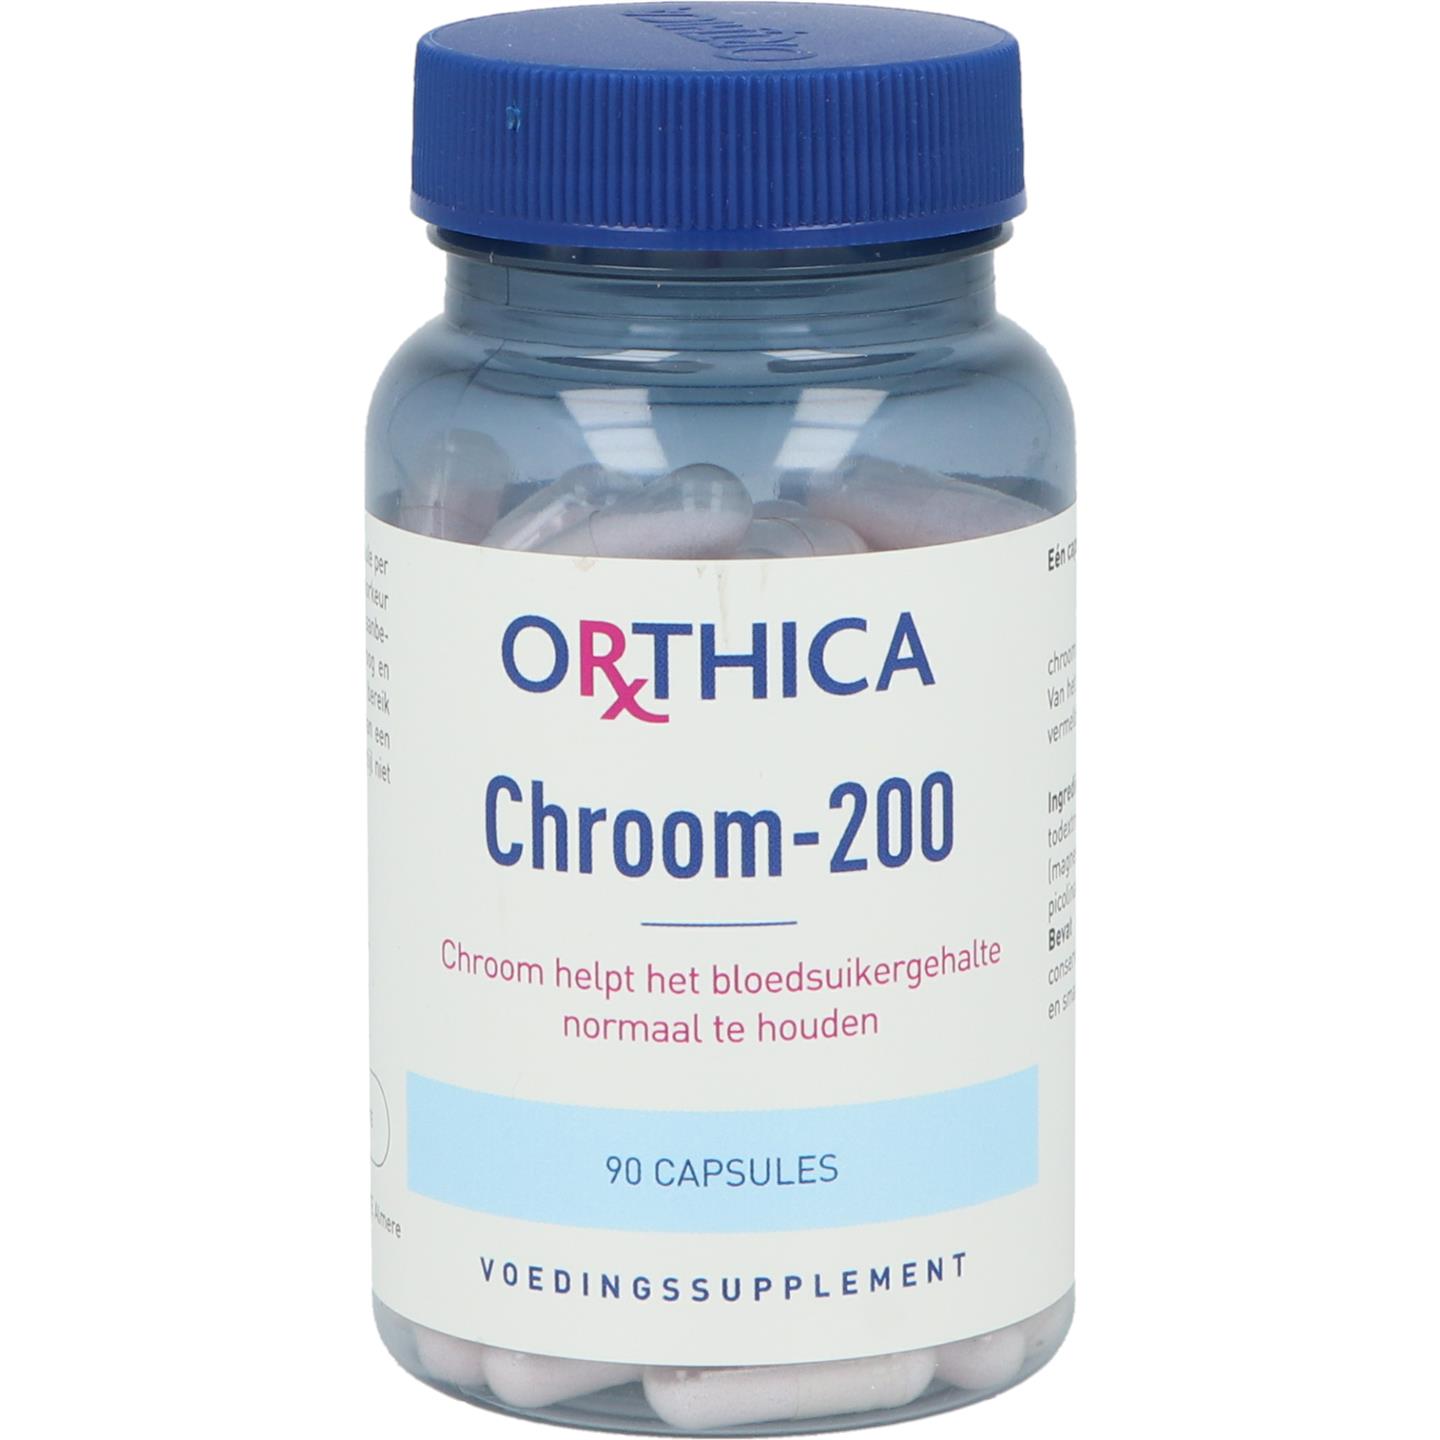 Chroom-200